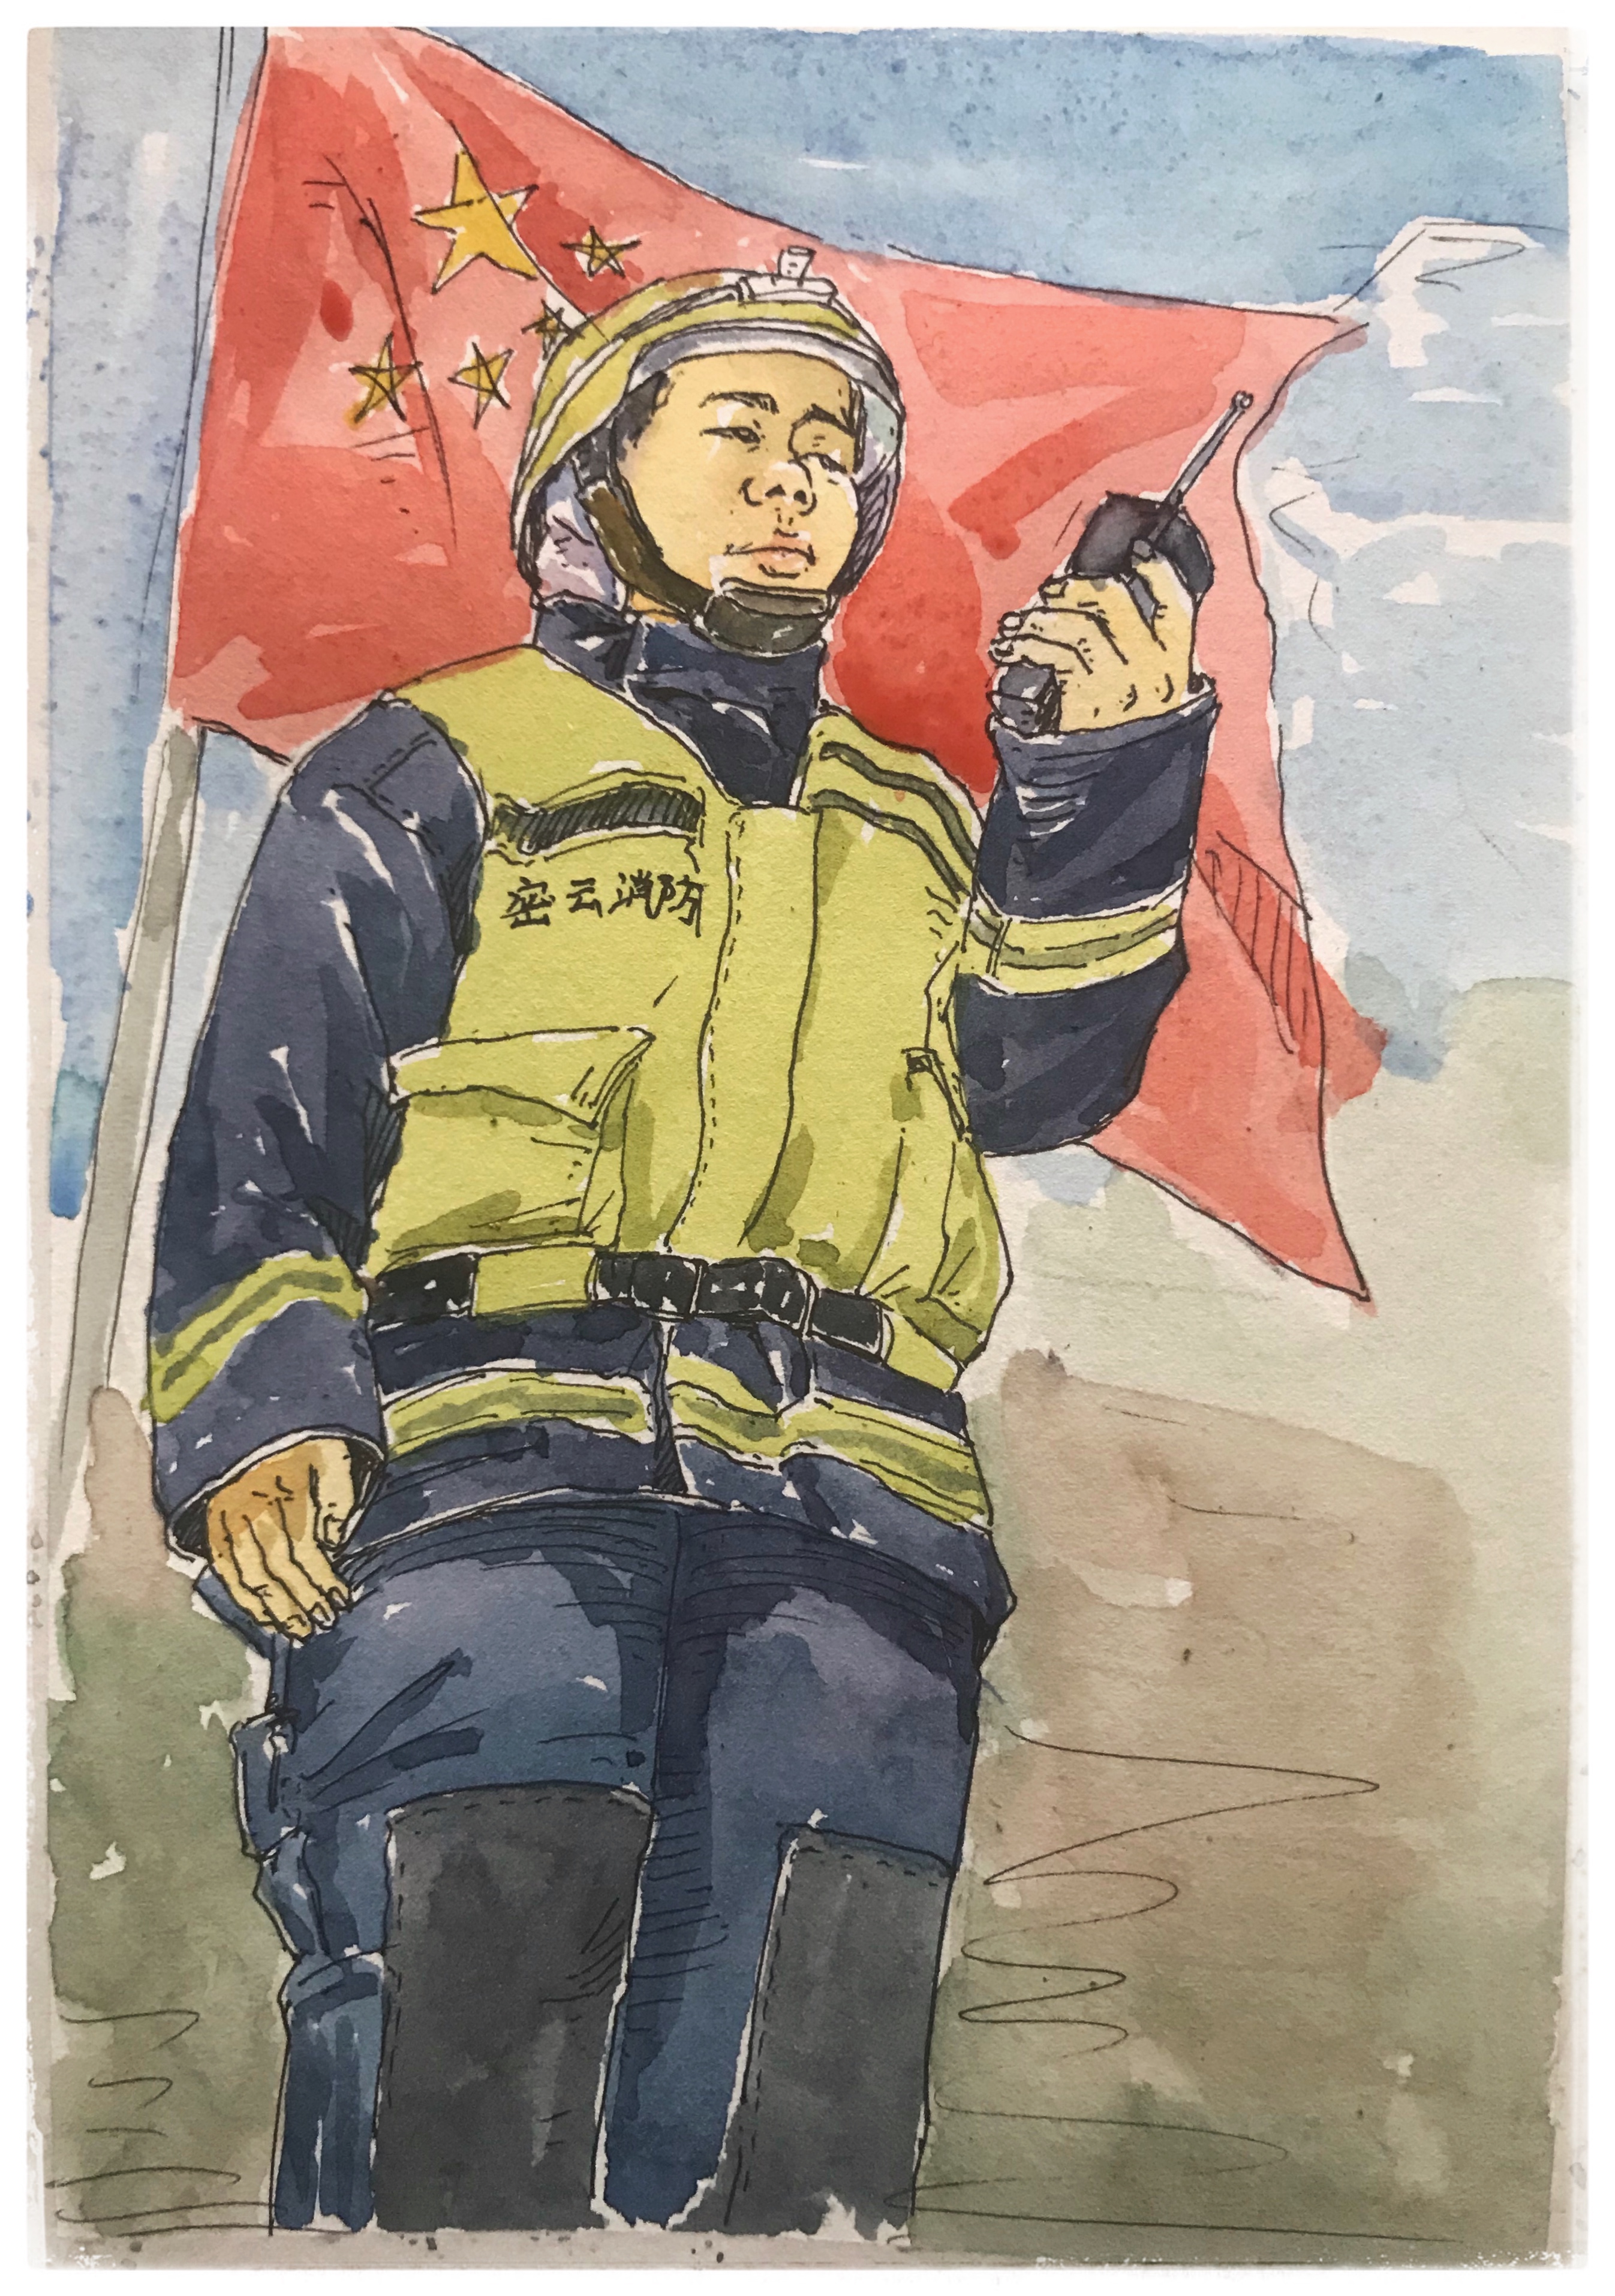 有才华!北京消防战士手绘图册 记录战友风采